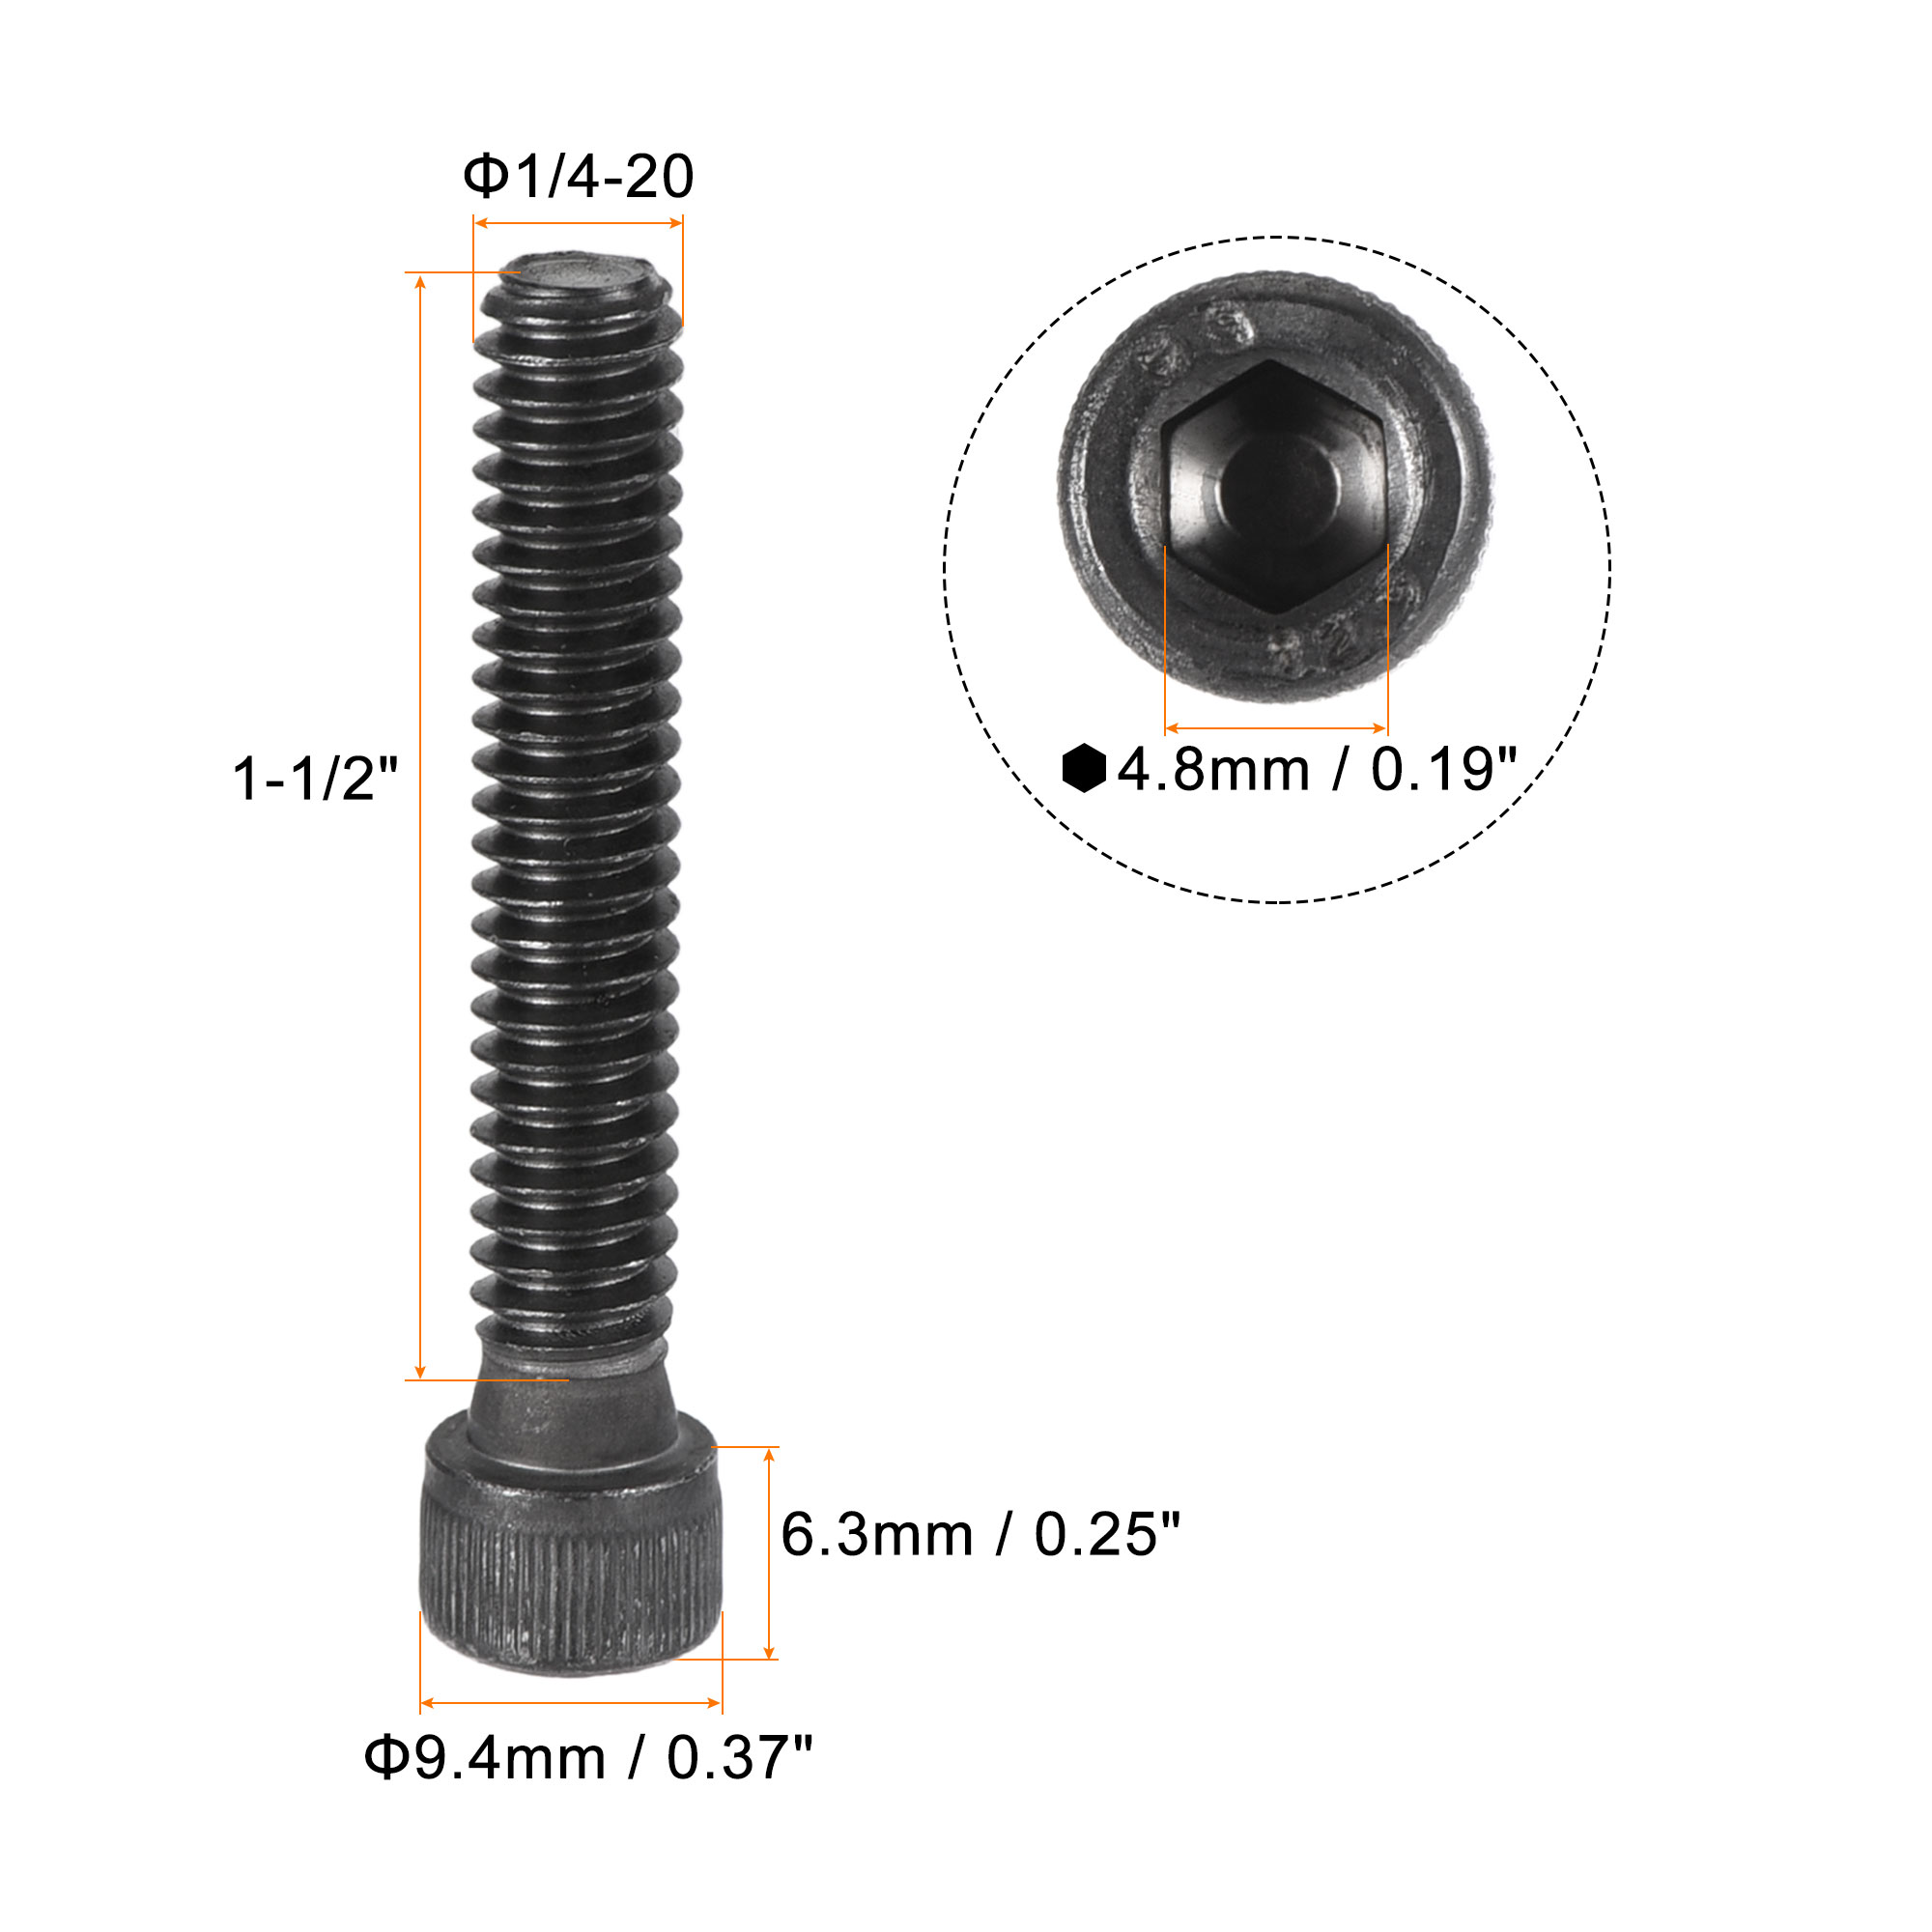 1/4-20x1-1/2" Hex Socket Bolts 12.9 Grade Alloy Steel Black Oxide 25 Pack - image 2 of 5